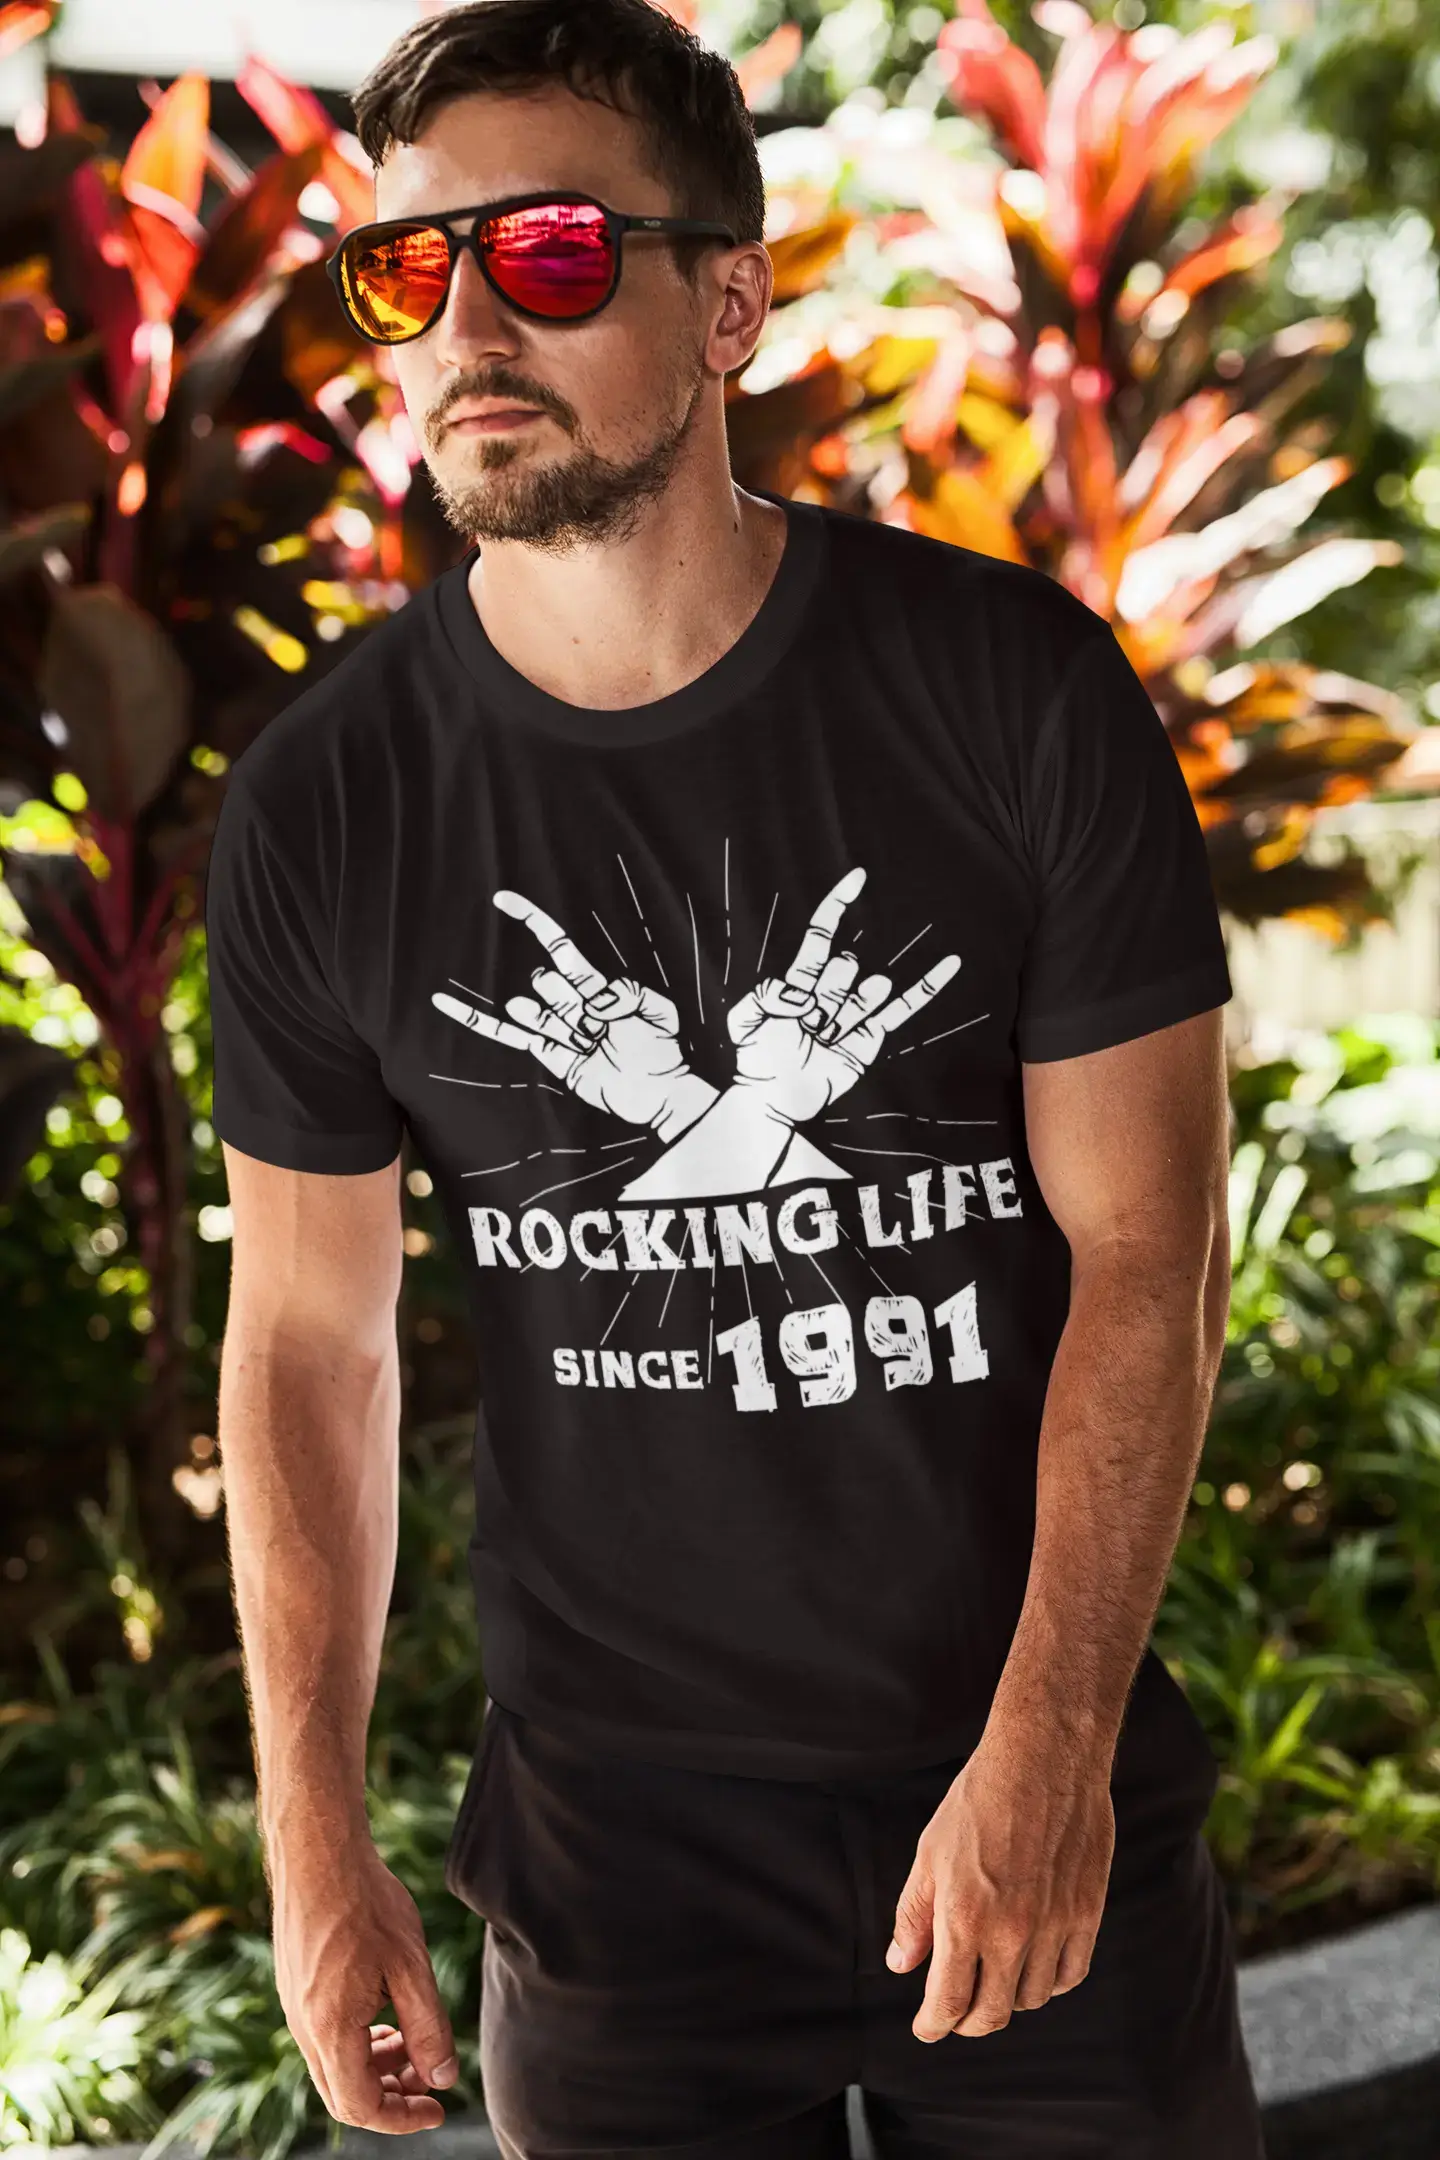 Rocking Life Since 1991 Herren T-Shirt Schwarz Geburtstagsgeschenk 00419